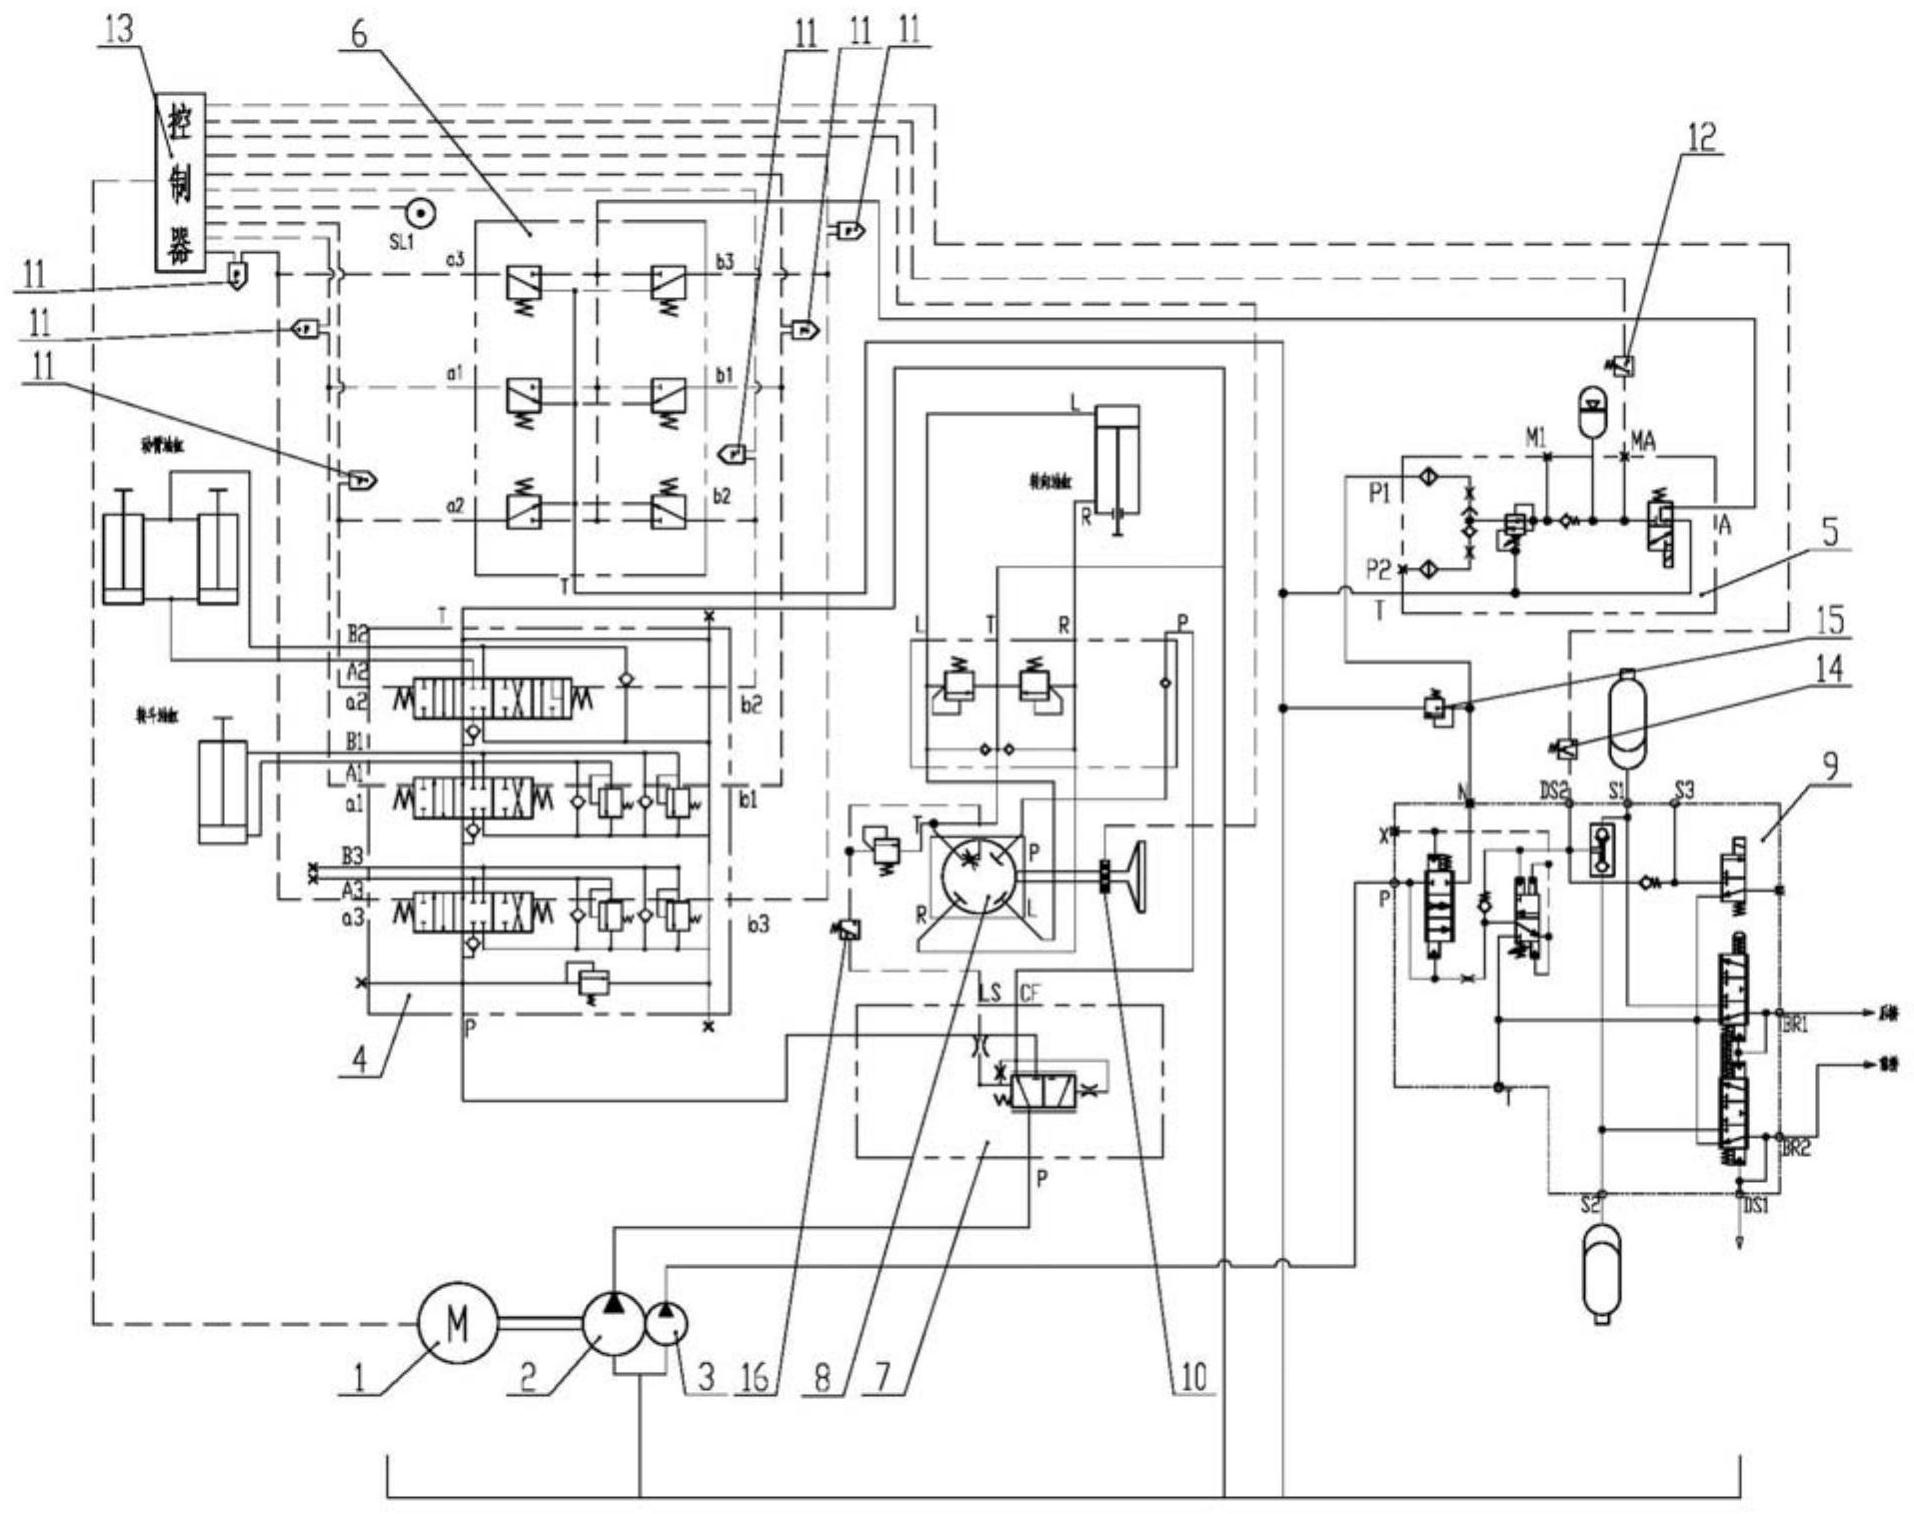 装载机液压系统原理图图片